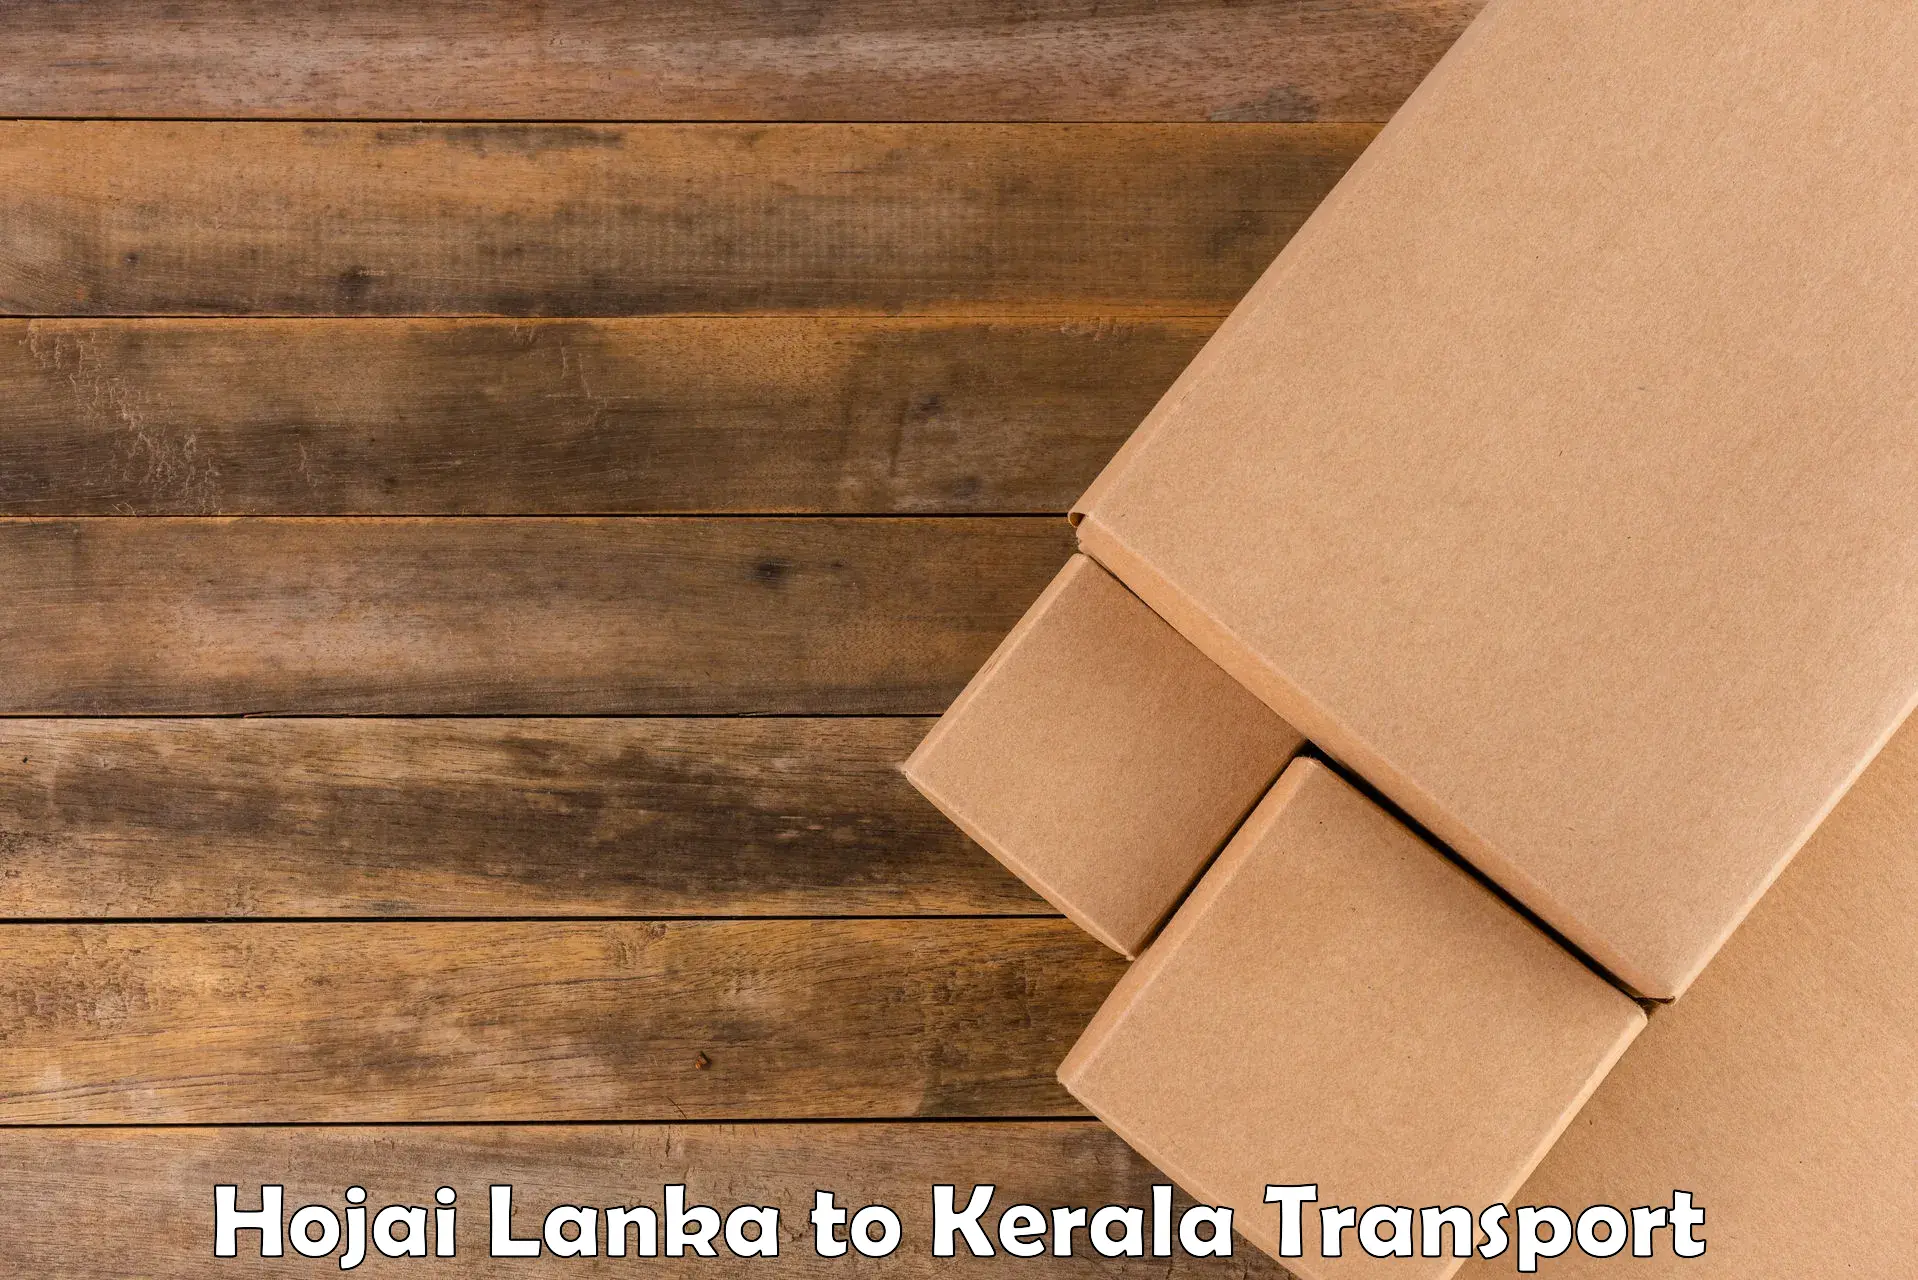 Road transport services Hojai Lanka to Haripad